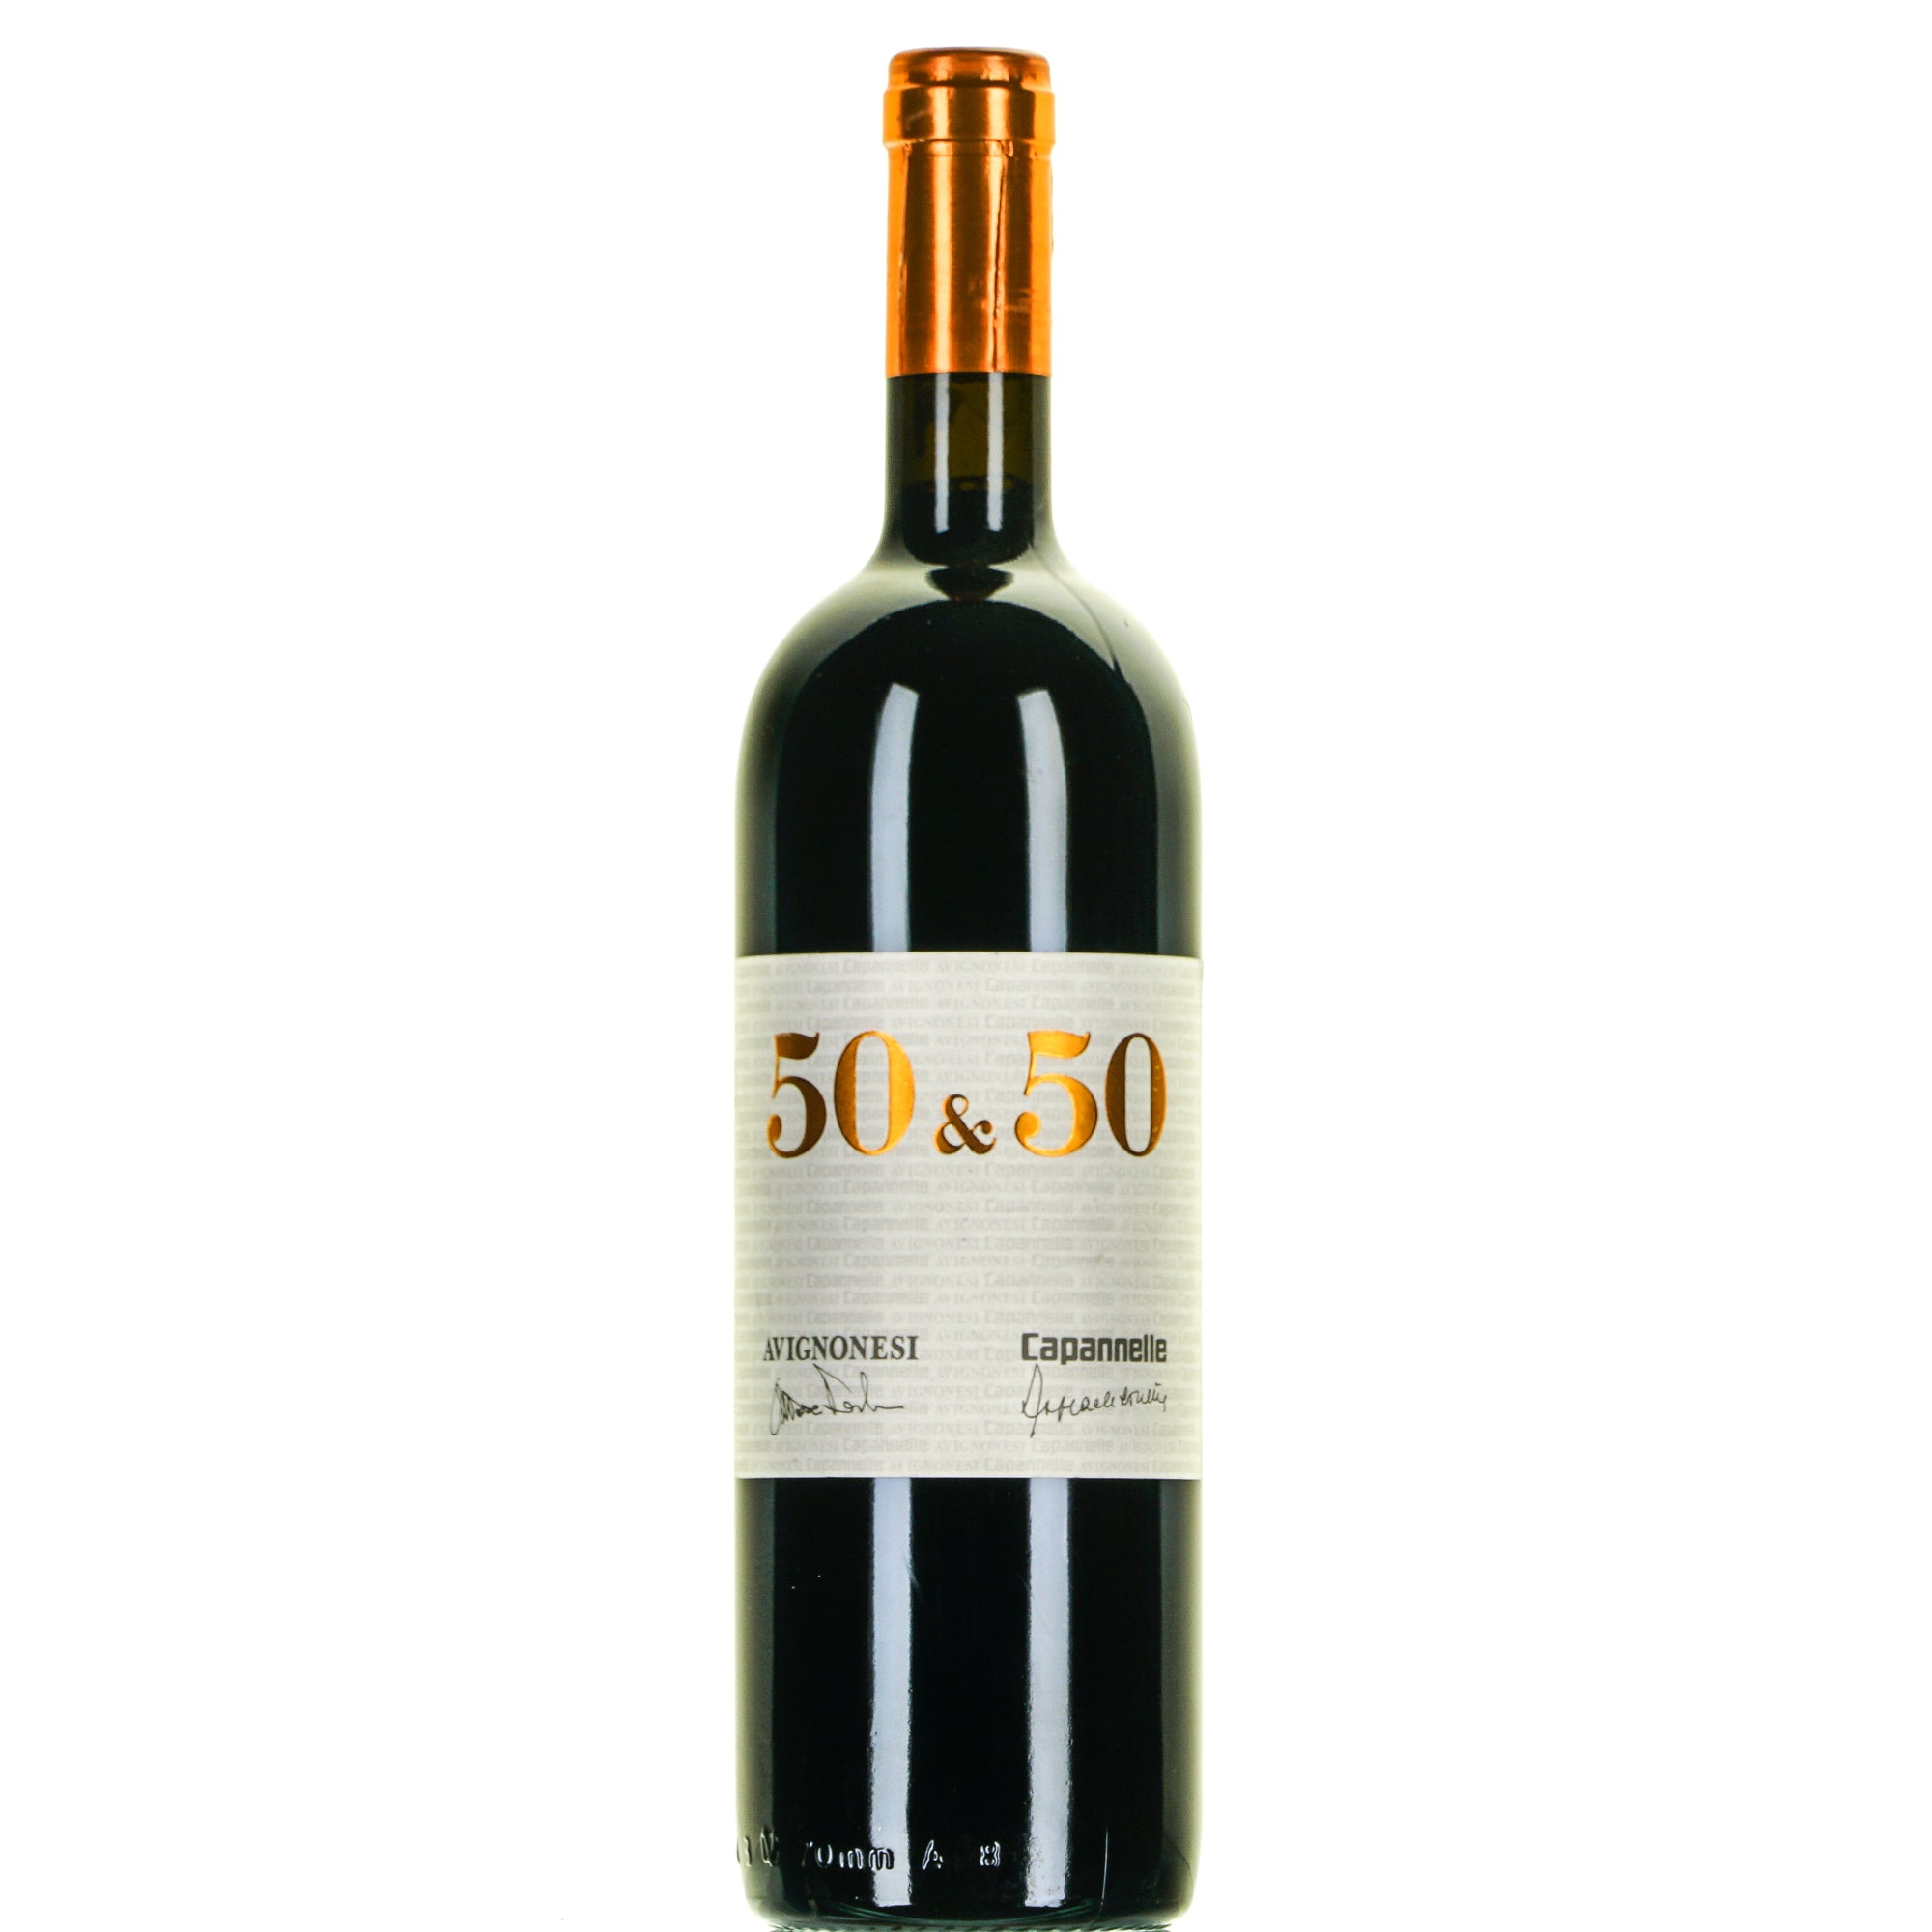 50&50 2001 vino da tavola Toscana lt.0,750